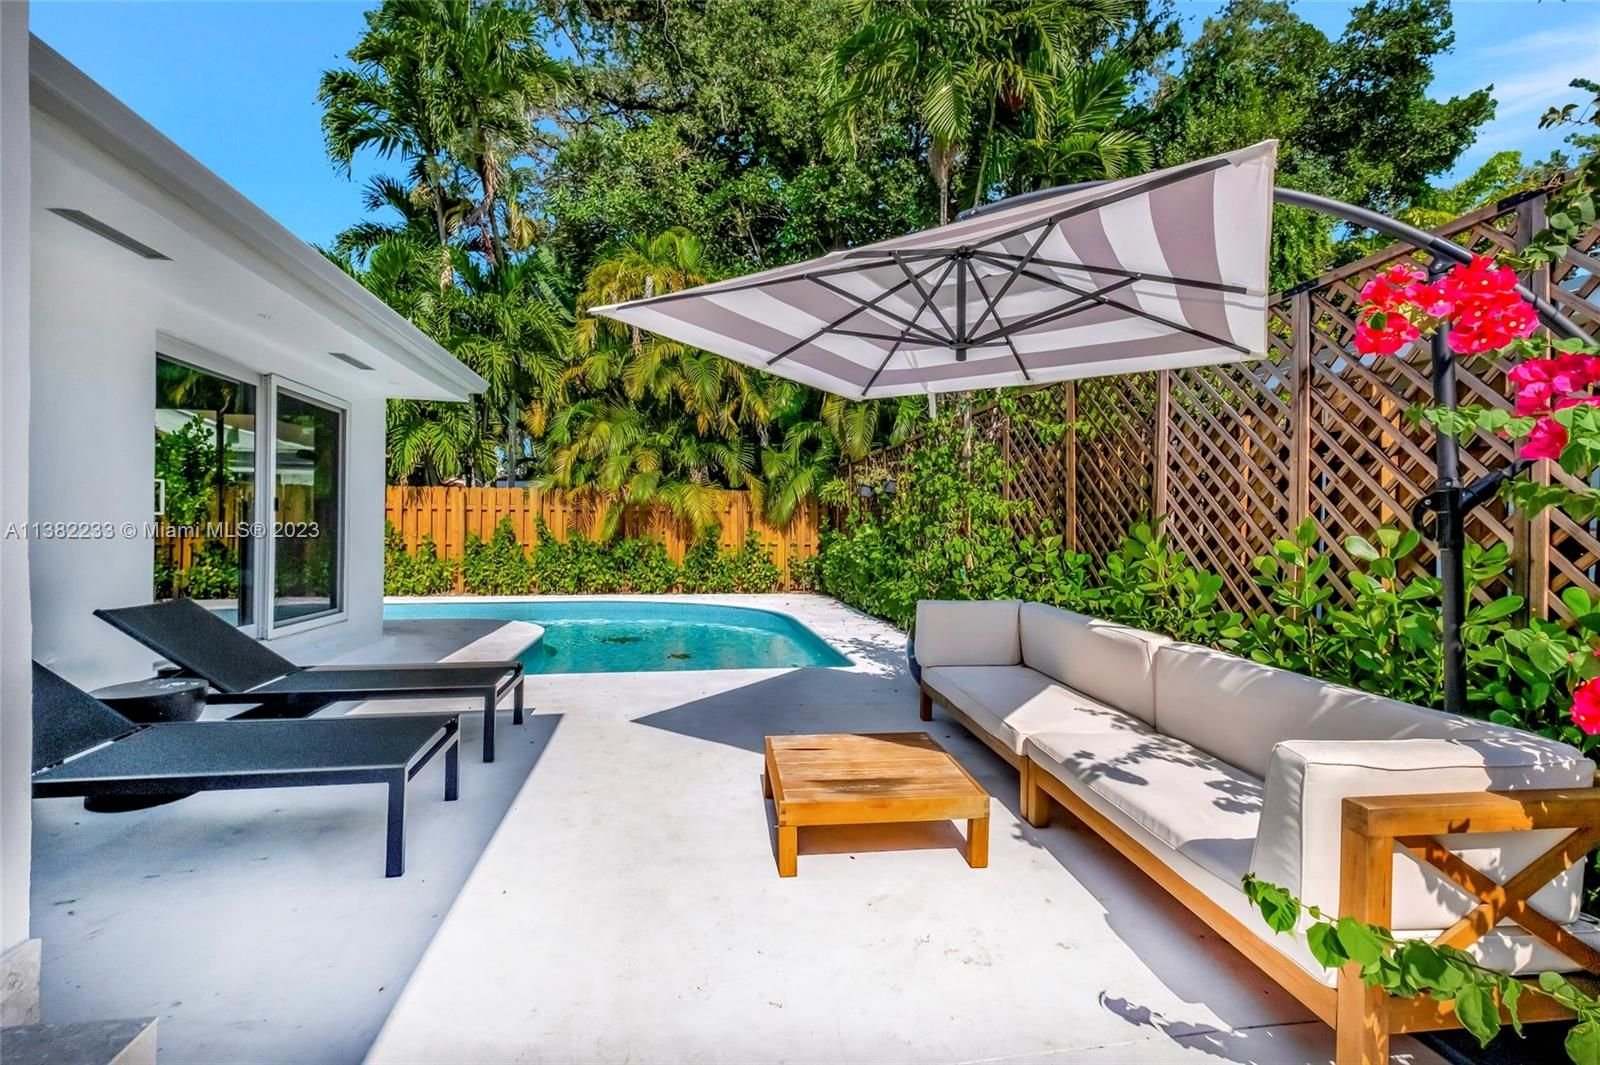 Real estate property located at 2440 Tequesta Ln, Miami-Dade County, Coconut Grove, FL